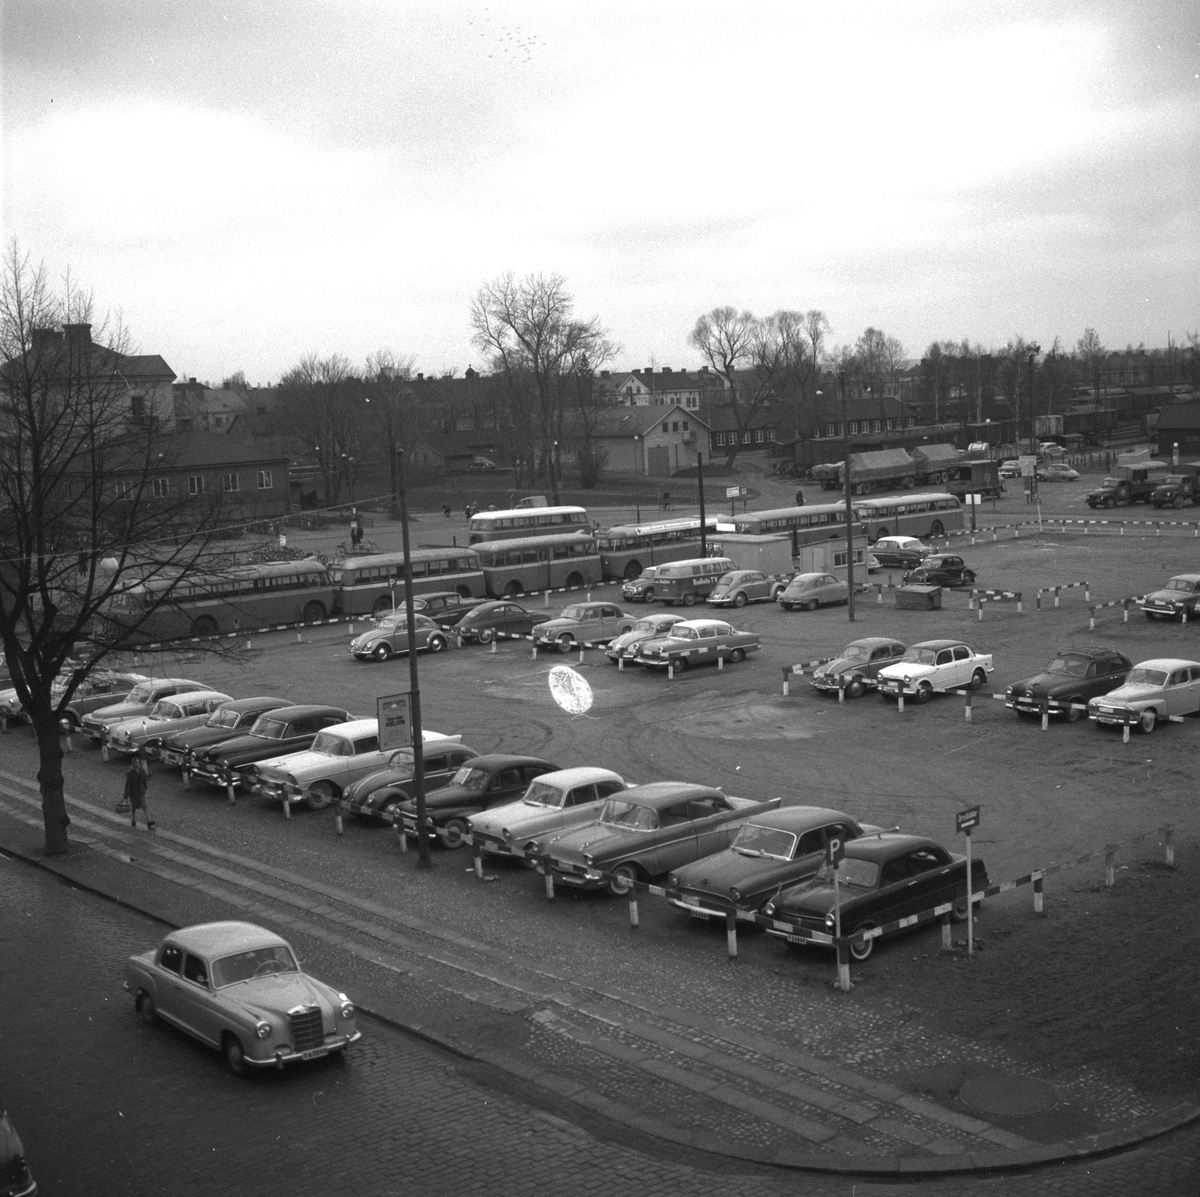 Alla busstationer under ett tak.
7 april 1959.